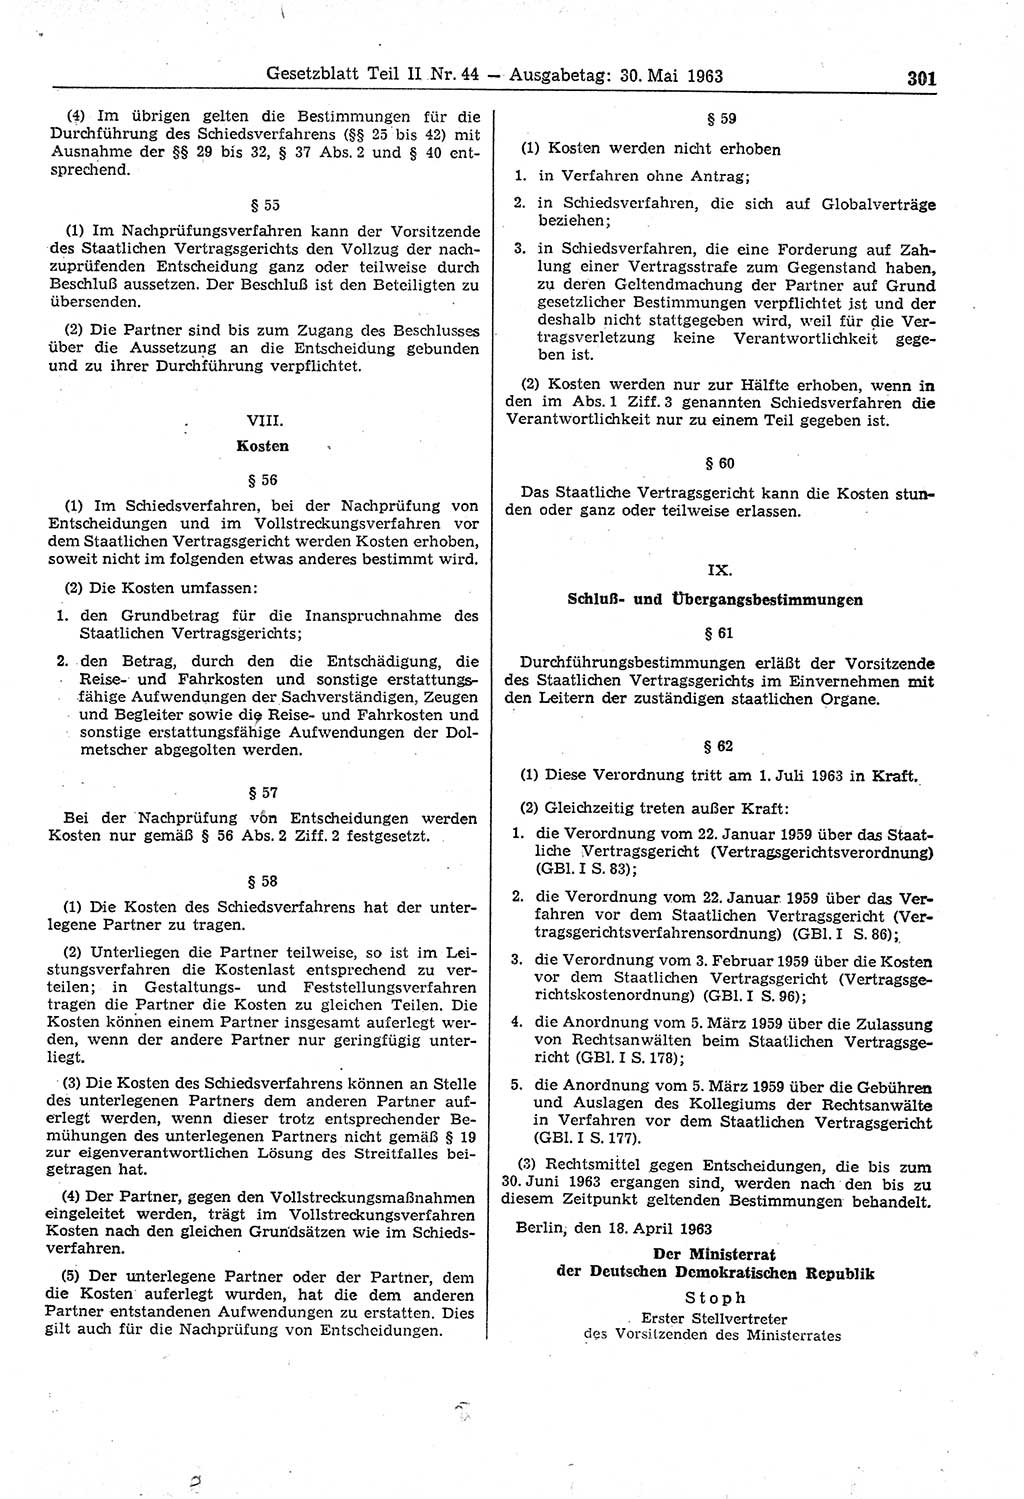 Gesetzblatt (GBl.) der Deutschen Demokratischen Republik (DDR) Teil ⅠⅠ 1963, Seite 301 (GBl. DDR ⅠⅠ 1963, S. 301)